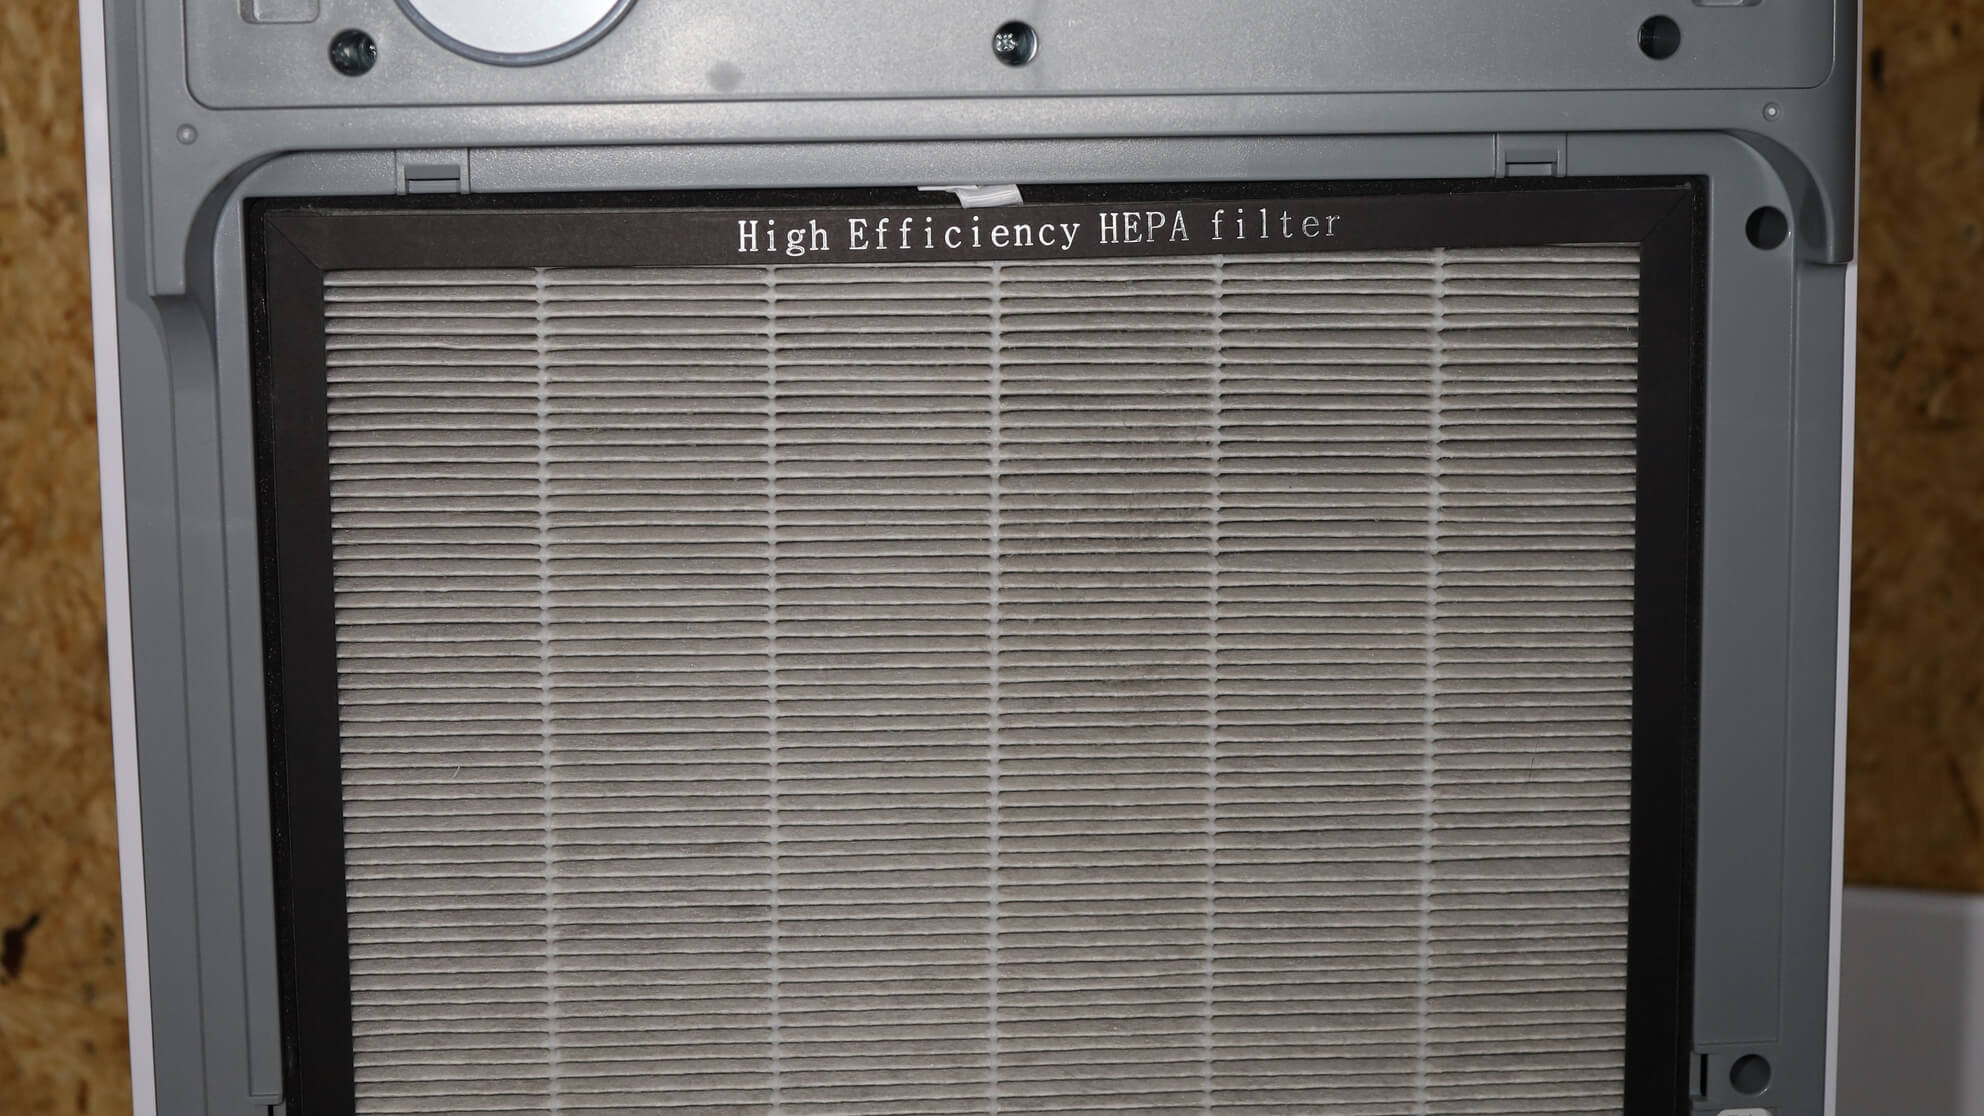 Dieser HEPA Filter hält Gräserpollen zurück und hilft deswegen bei Heuschnupfen